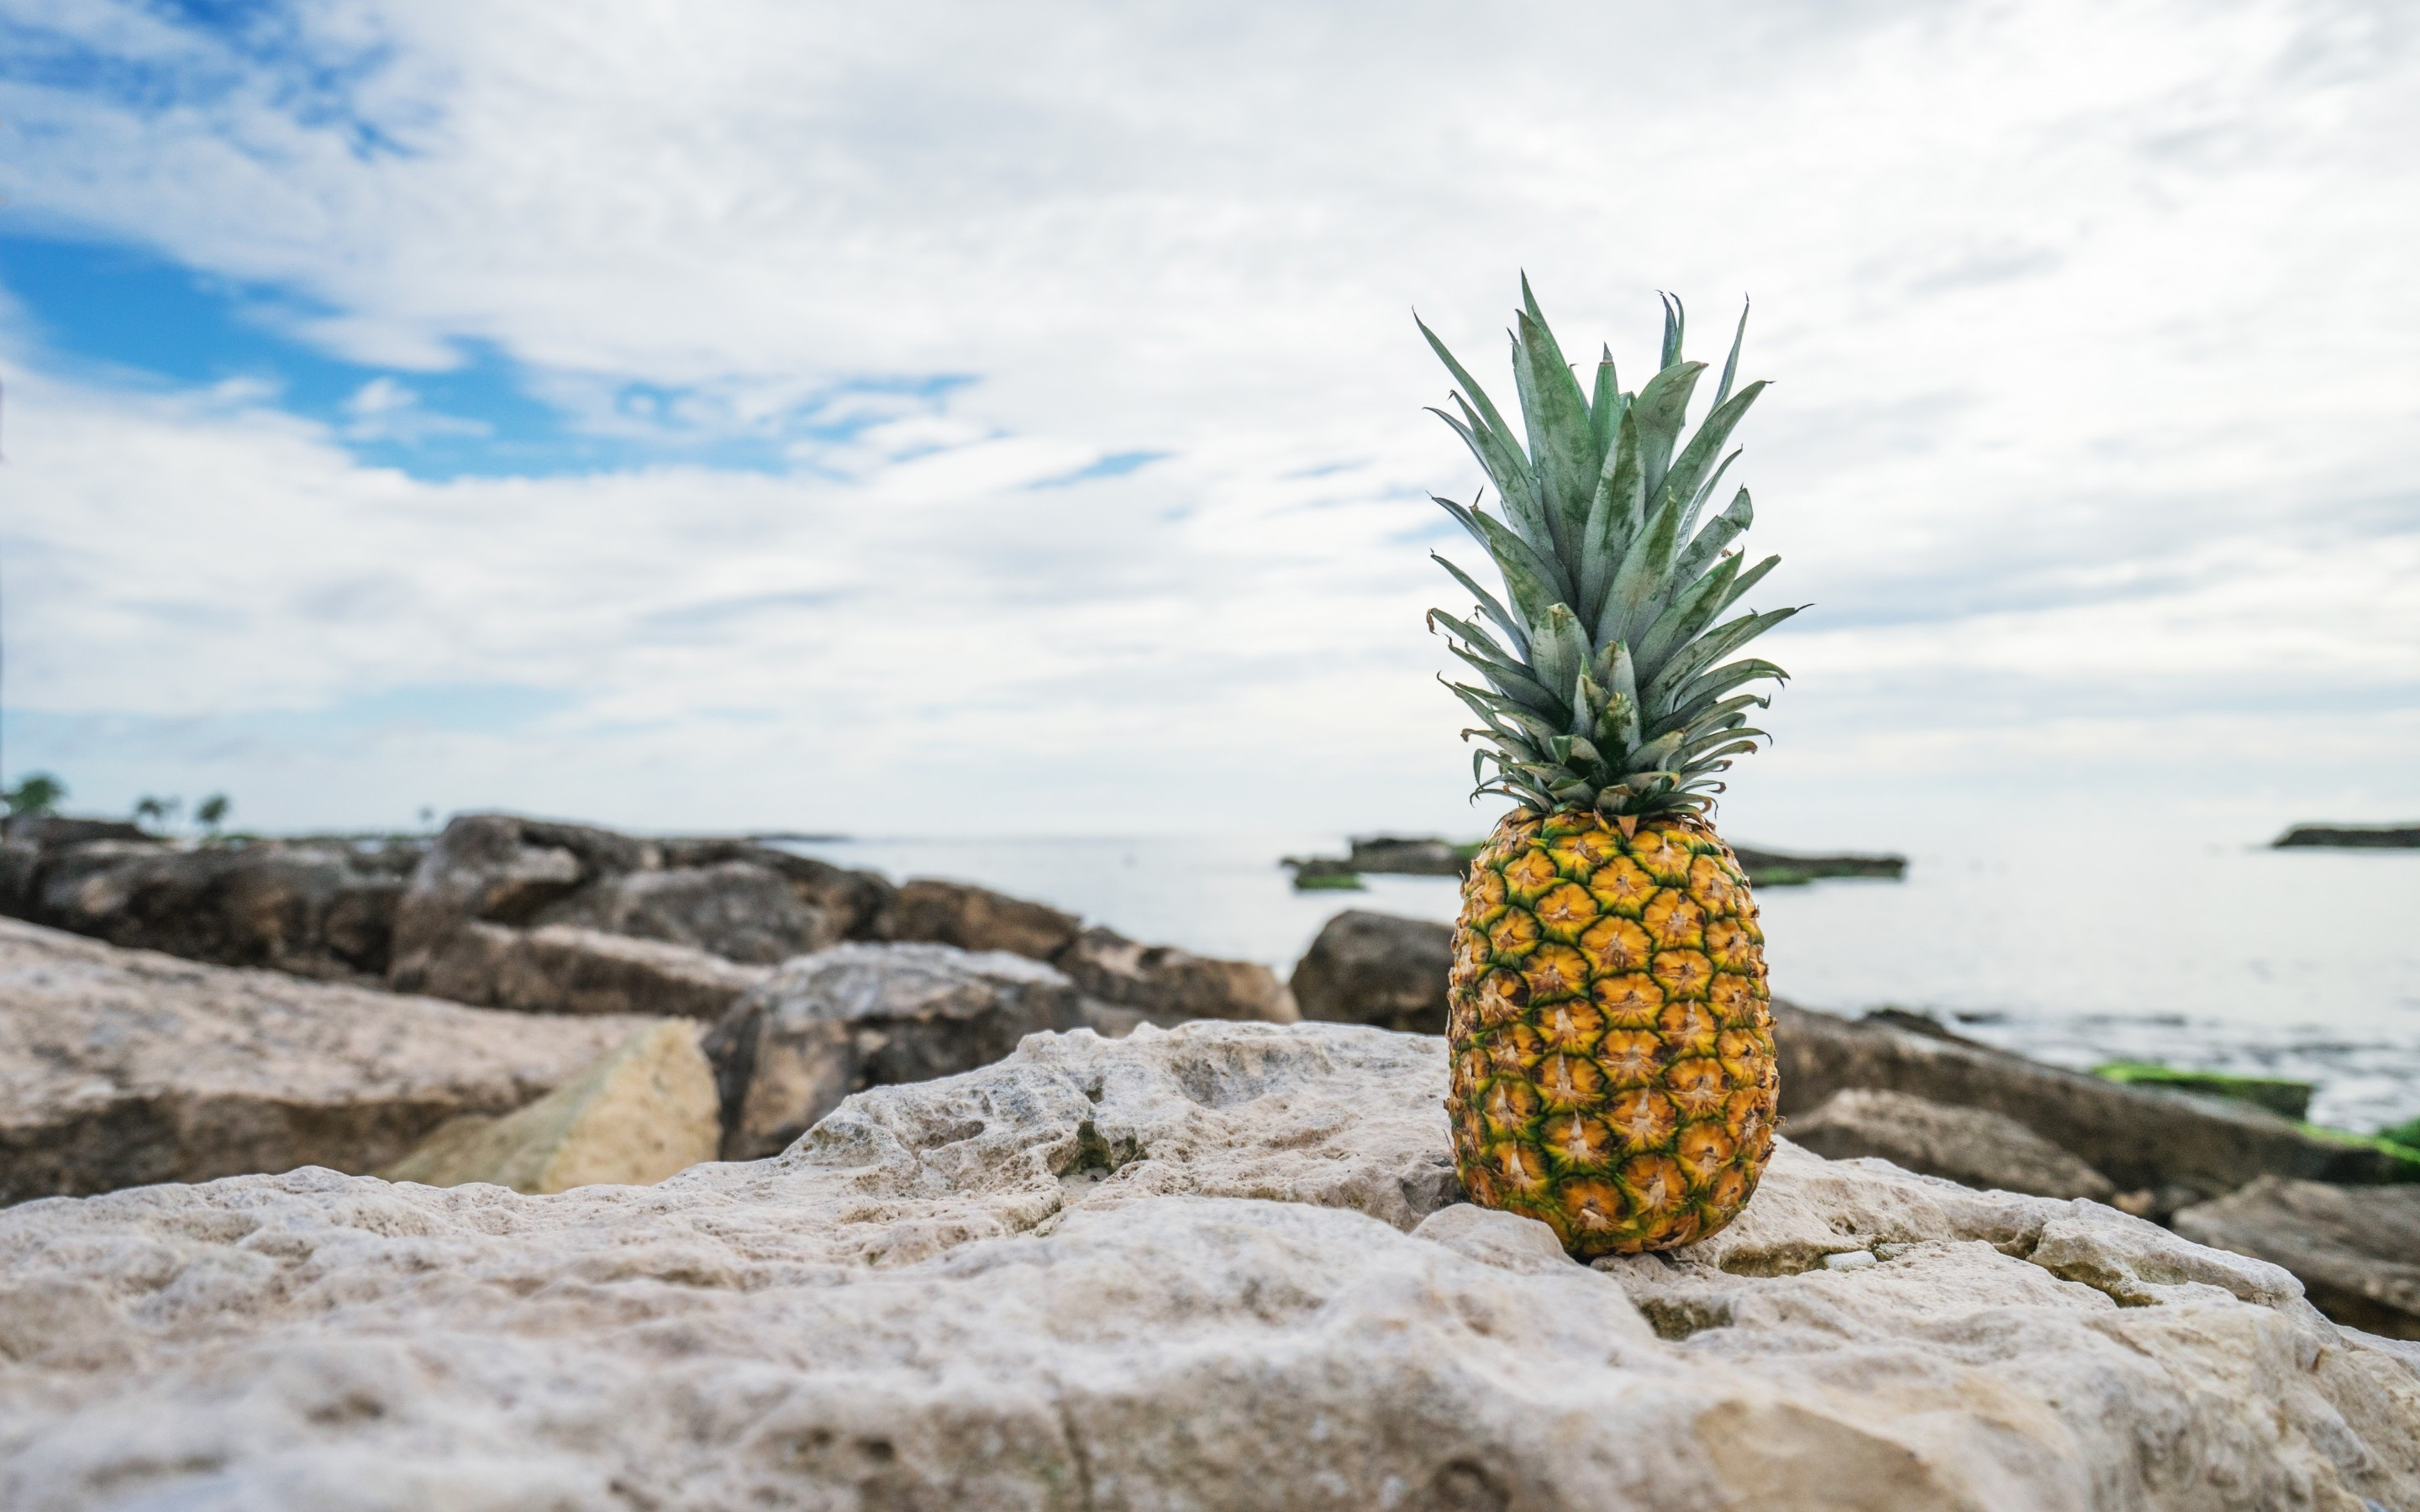 Download 2880x1800 Pineapple, Fruit, Rocks, Ocean Wallpaper for MacBook Pro 15 inch